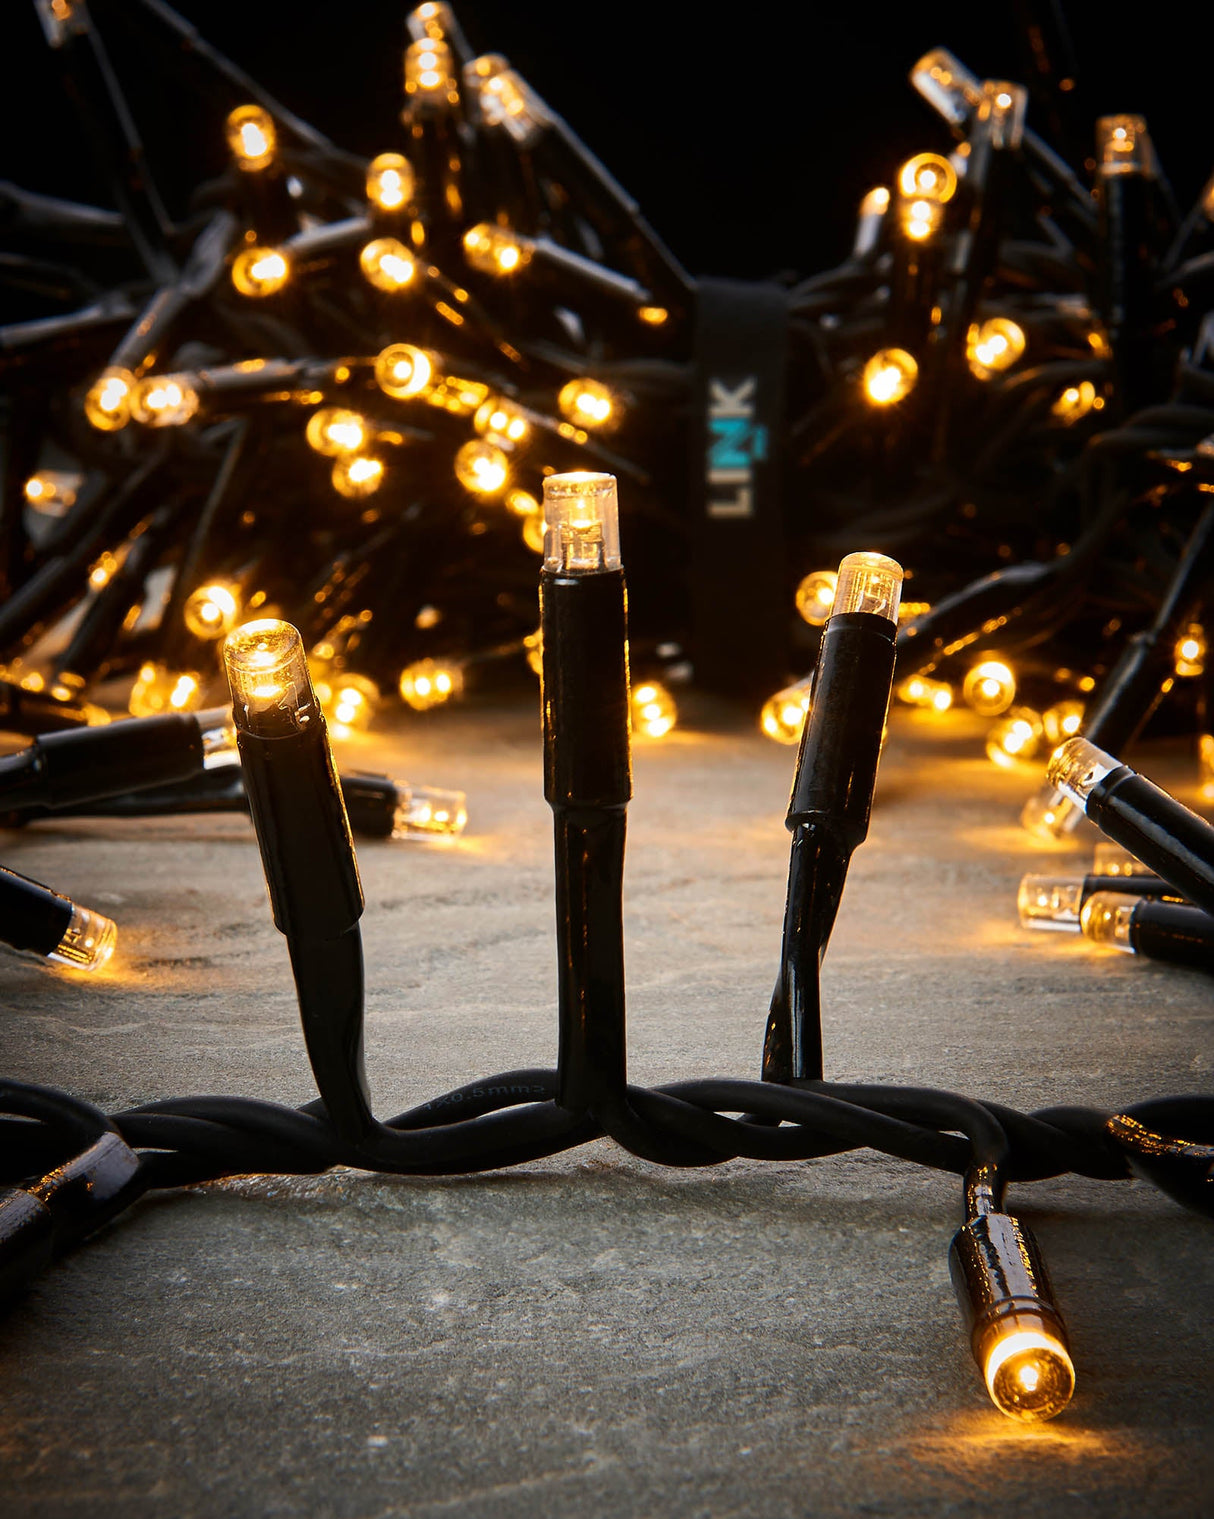 LINK PRO LED Cluster Lights, Black Cable, Warm White